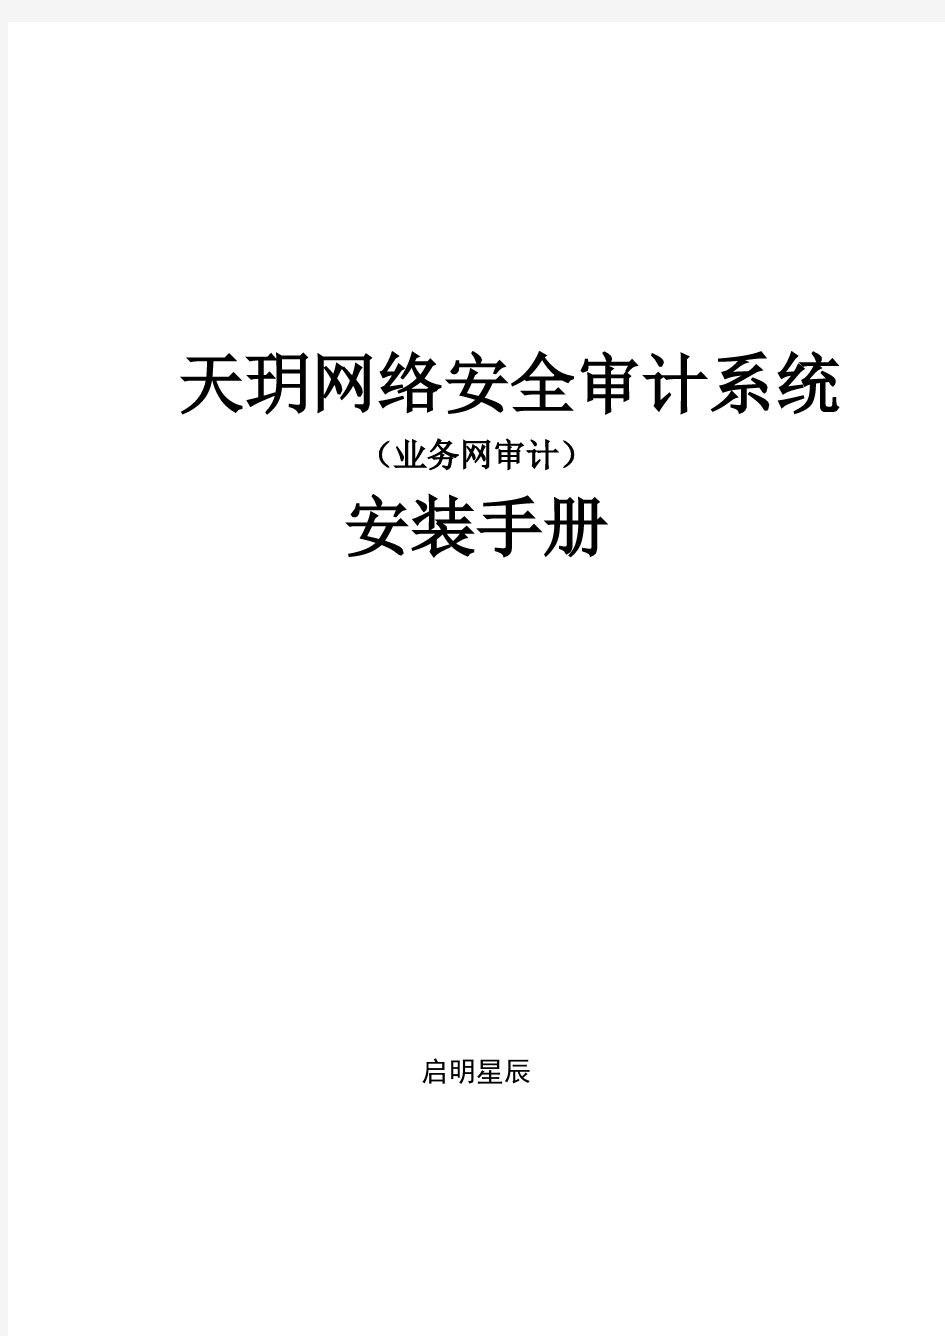 天玥网络安全审计系统(业务网审计)V6.0.11.1安装手册